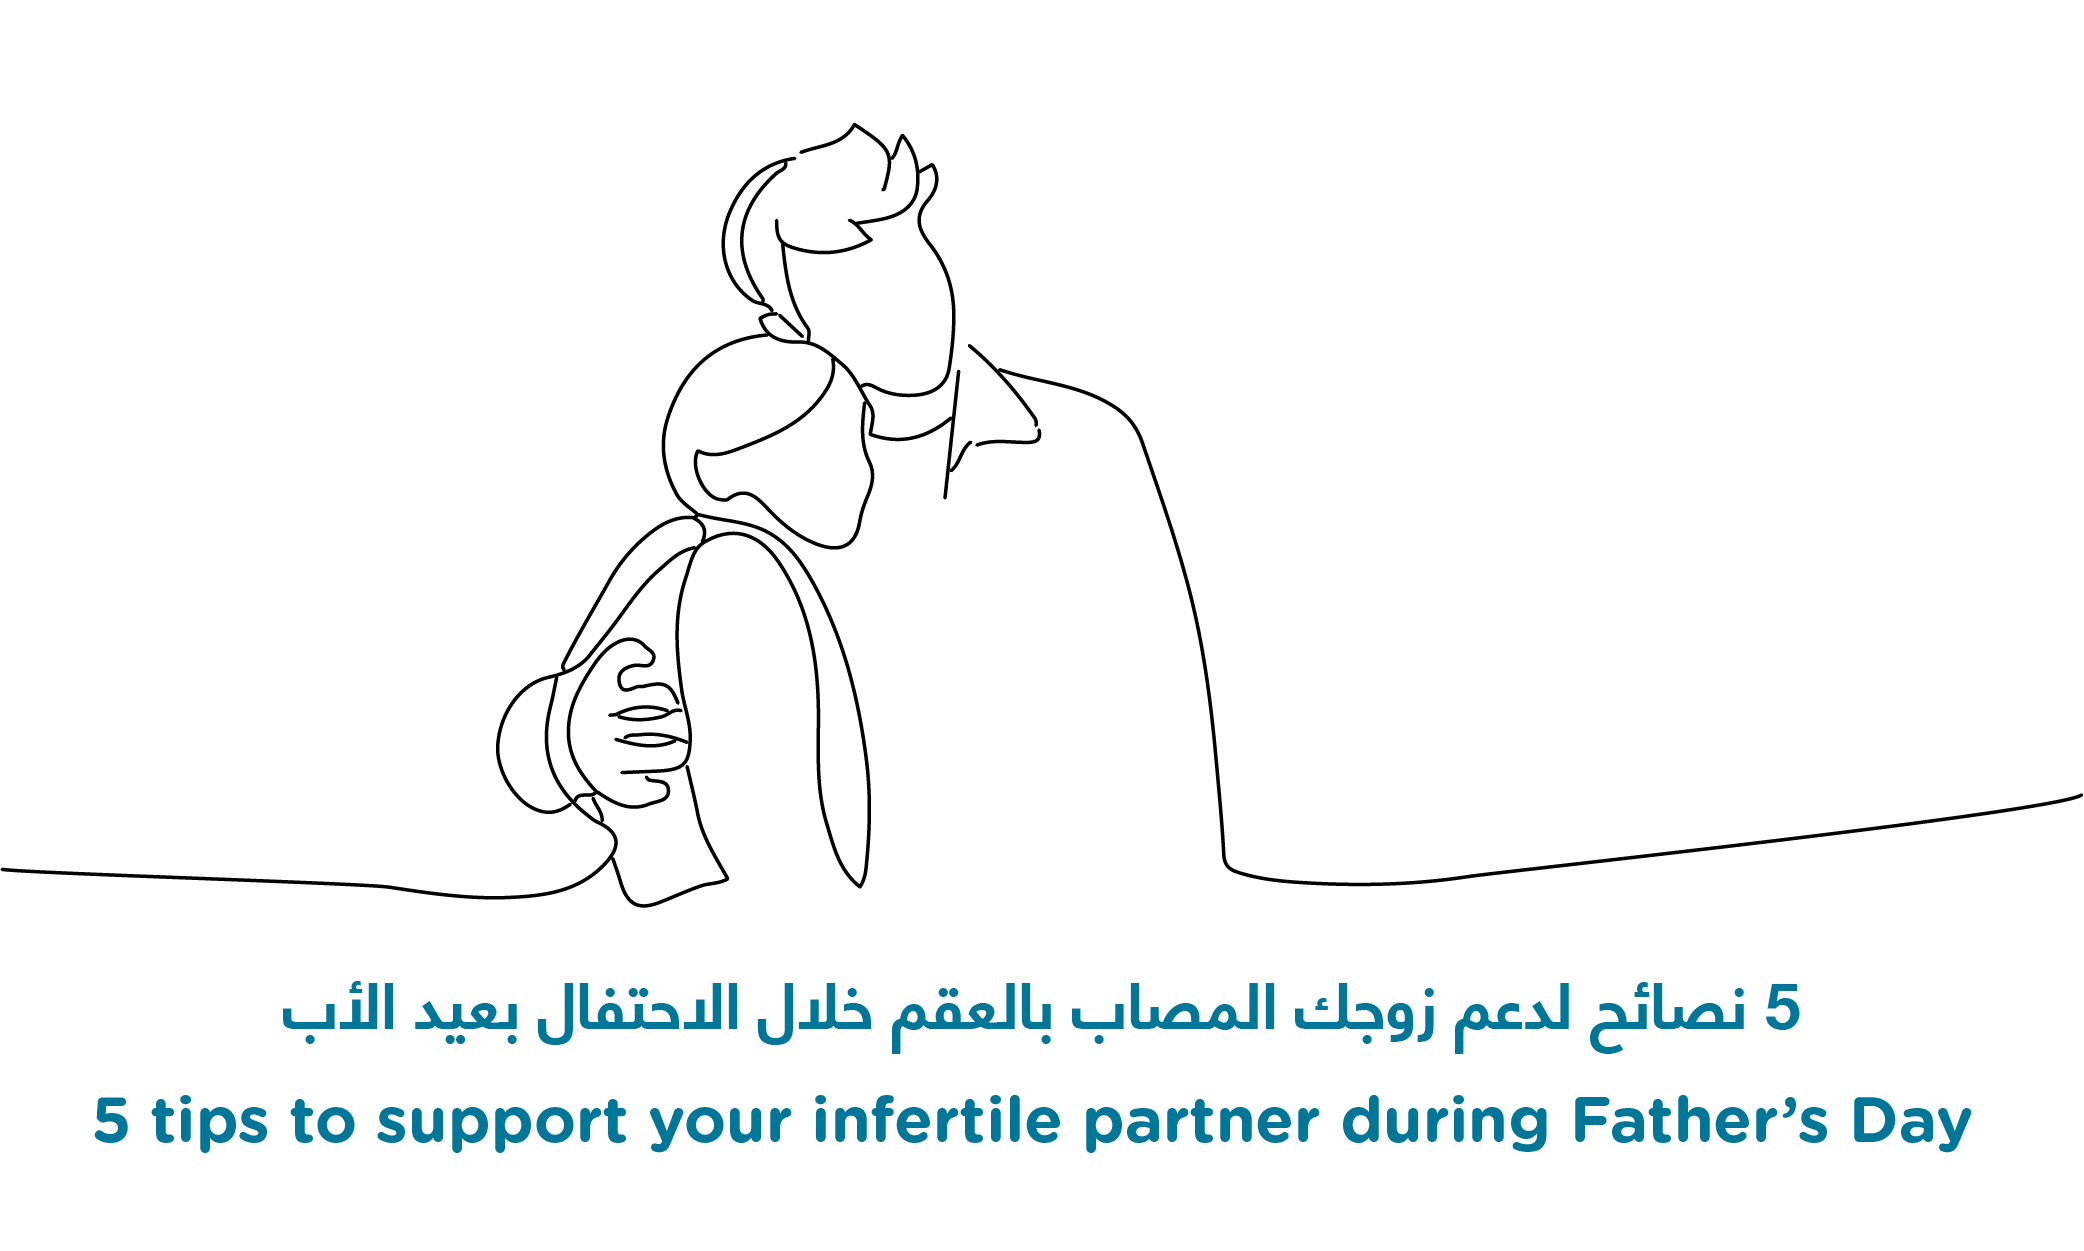 5 نصائح لدعم زوجك المصاب بالعقم خلال الاحتفال بعيد الأب